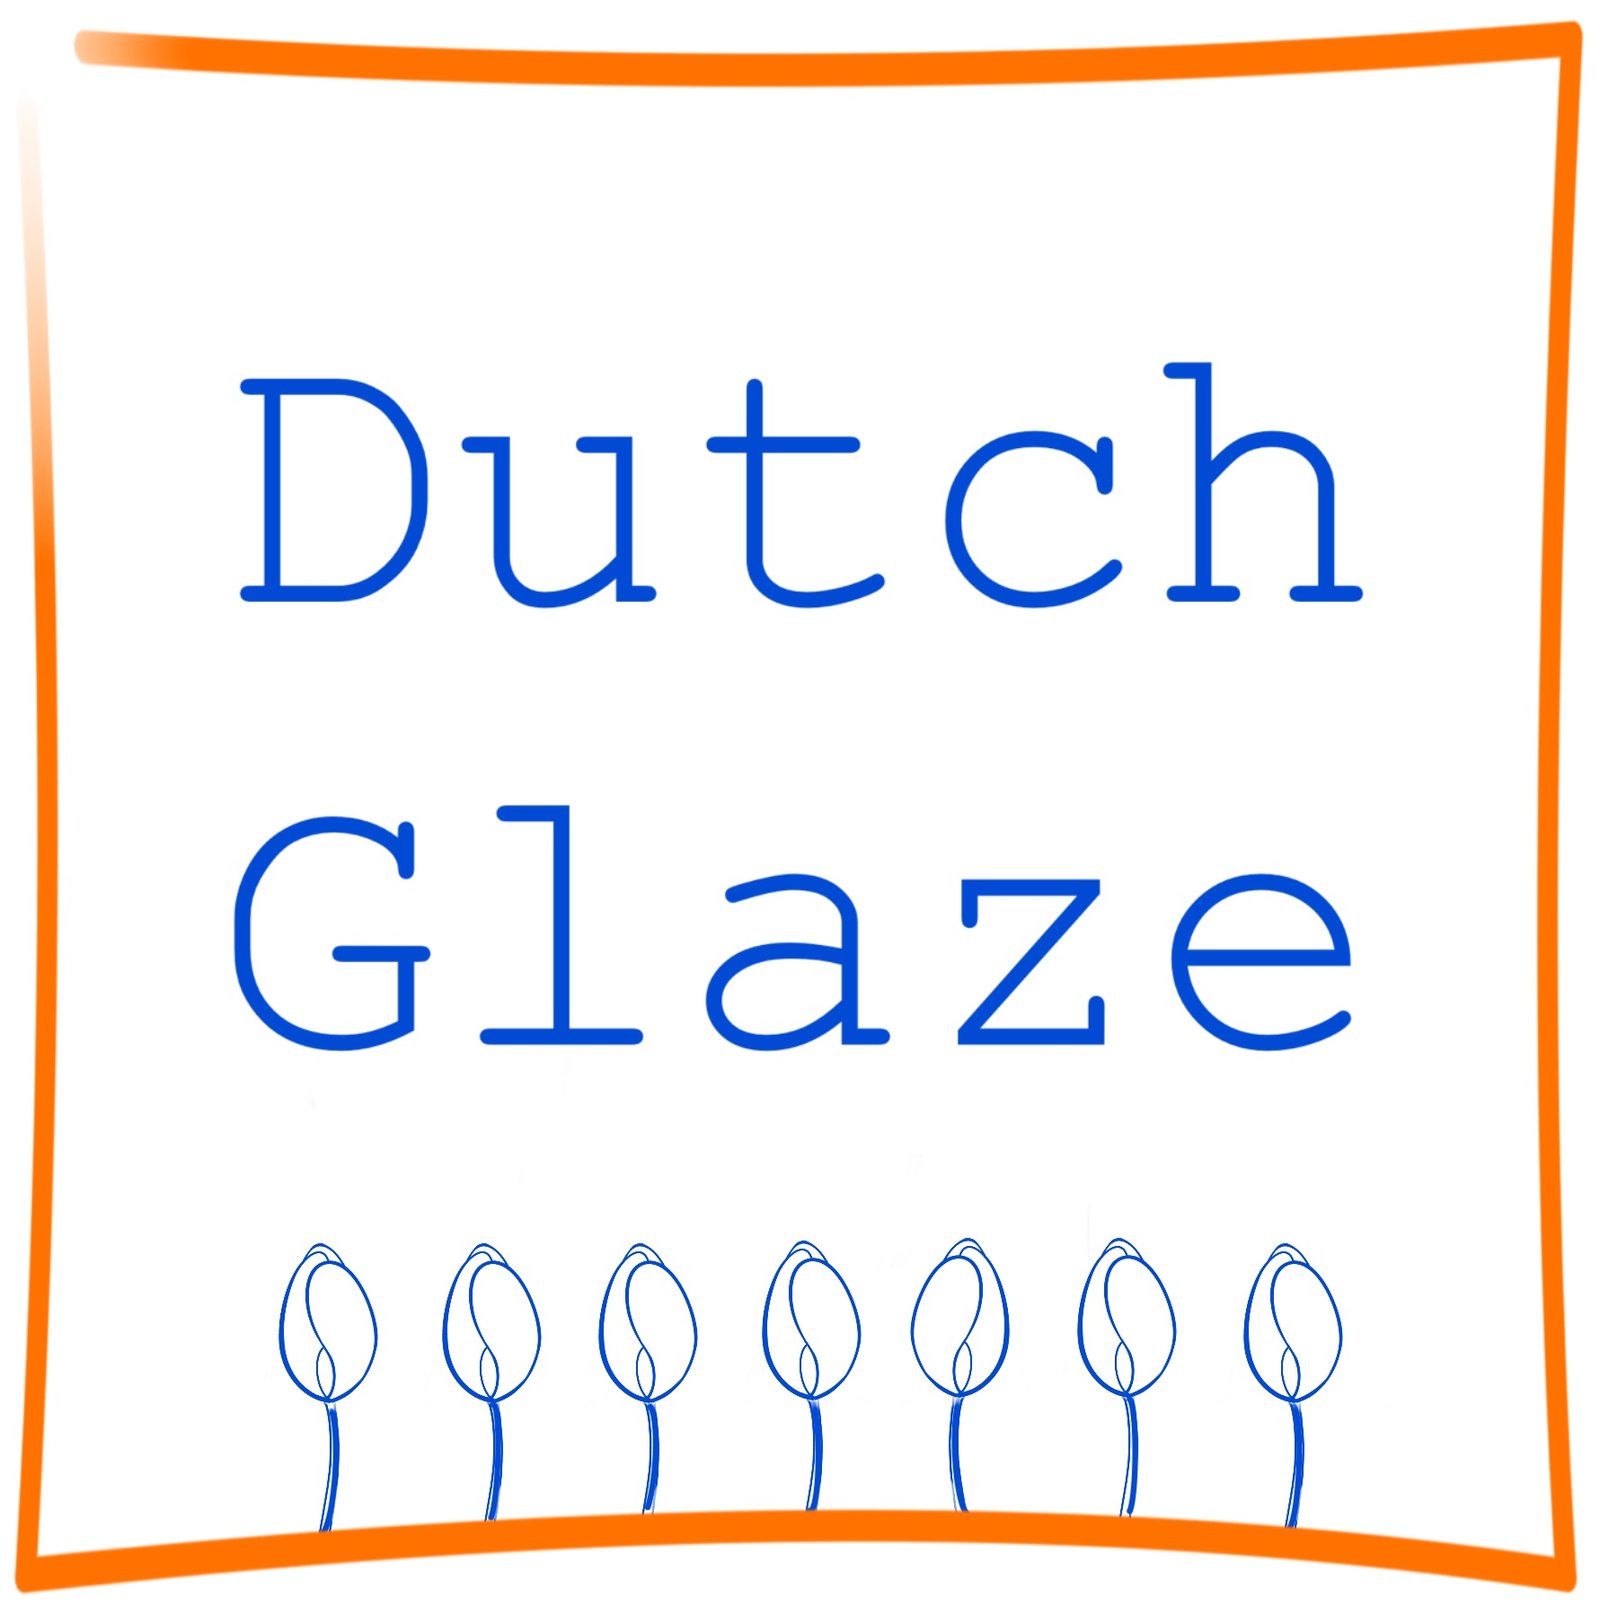 Dutch Glaze